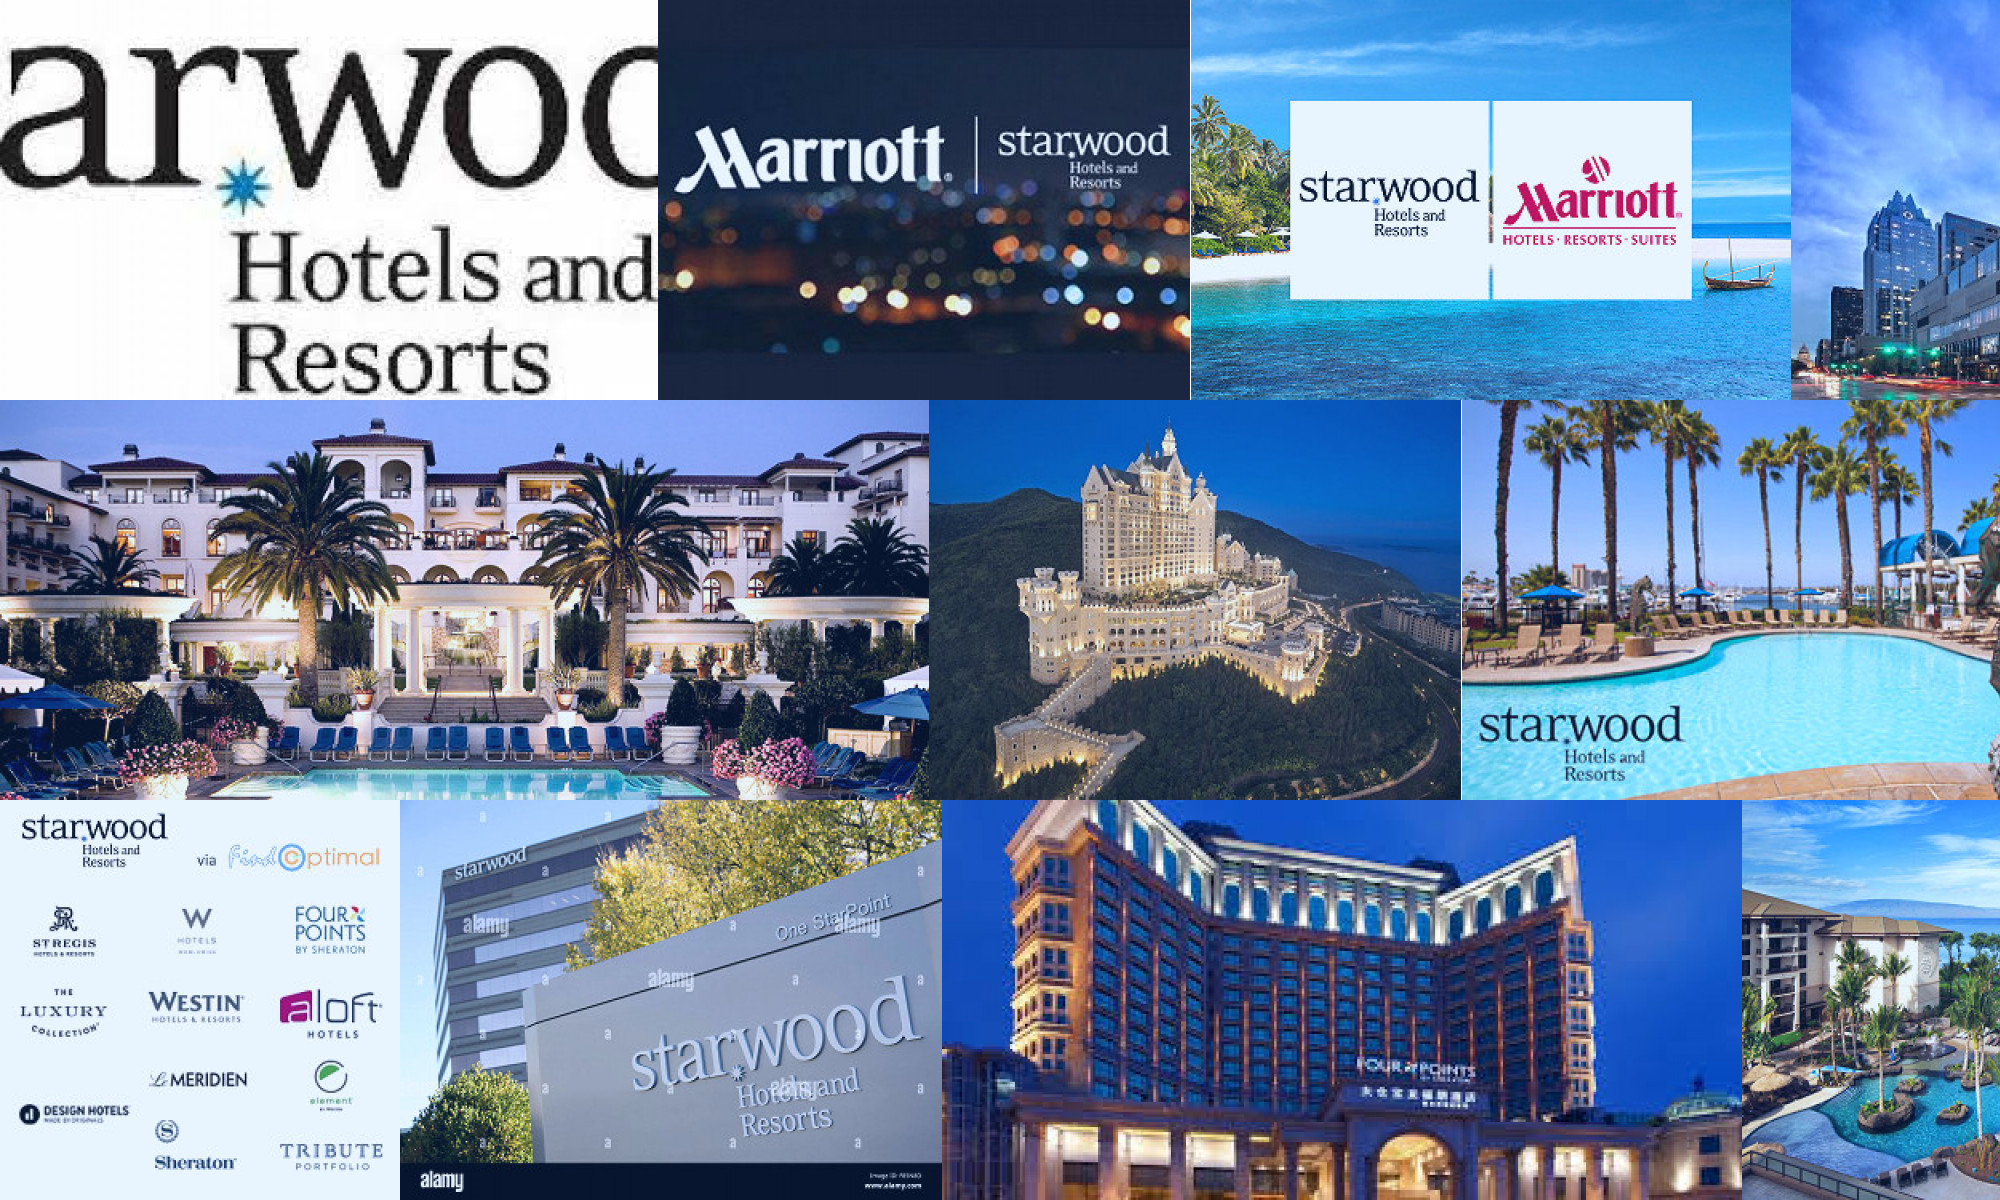 starwood hotels & resorts